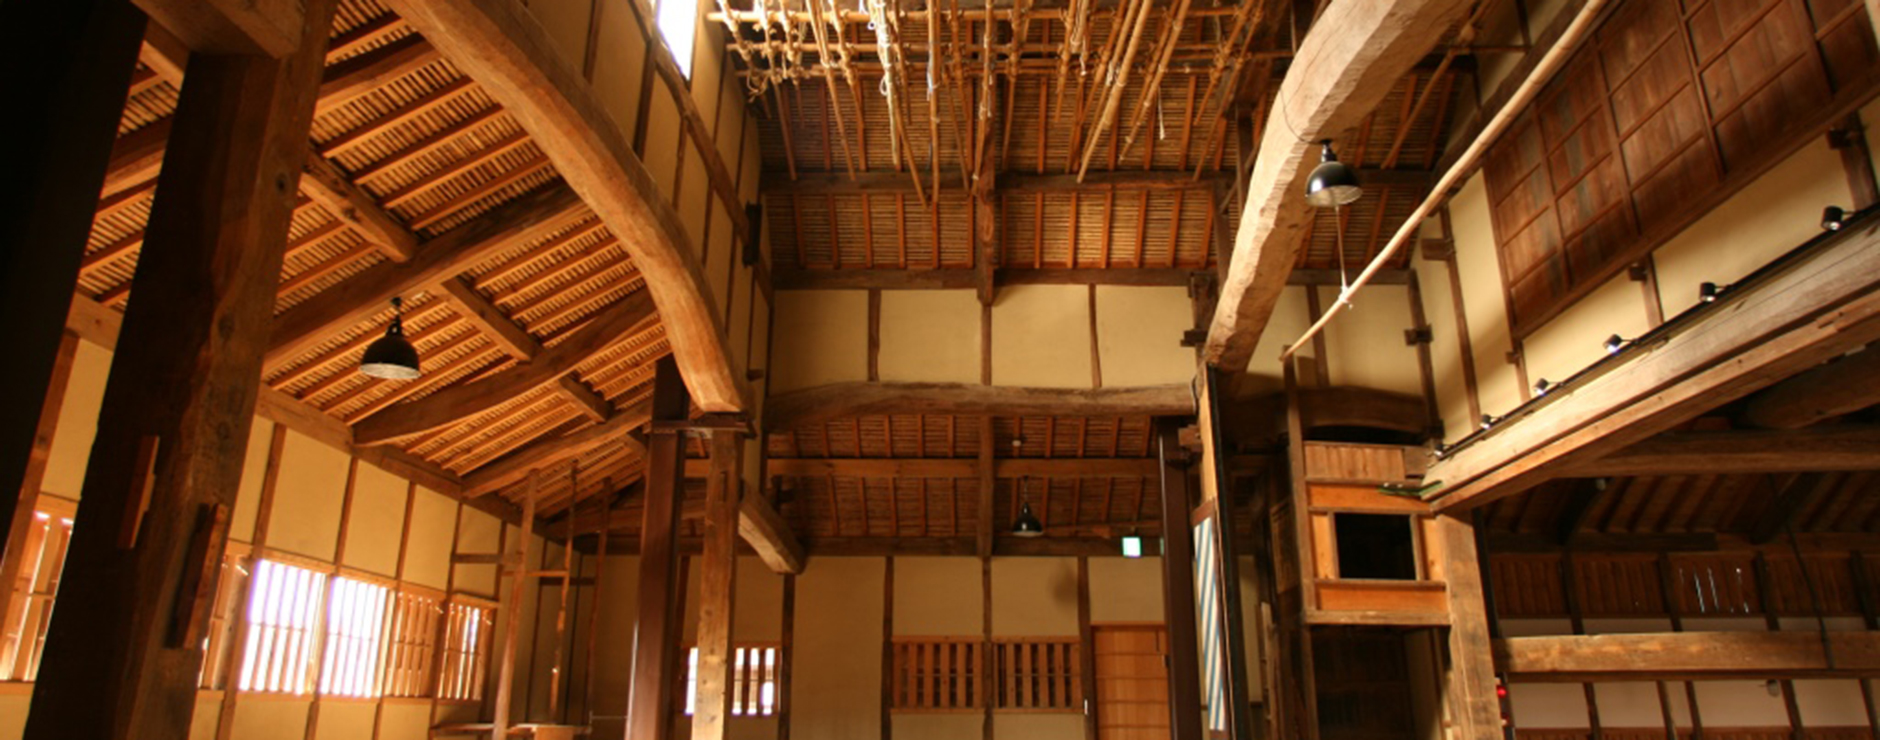 国指定重要有形民俗文化財の農村歌舞伎舞台。